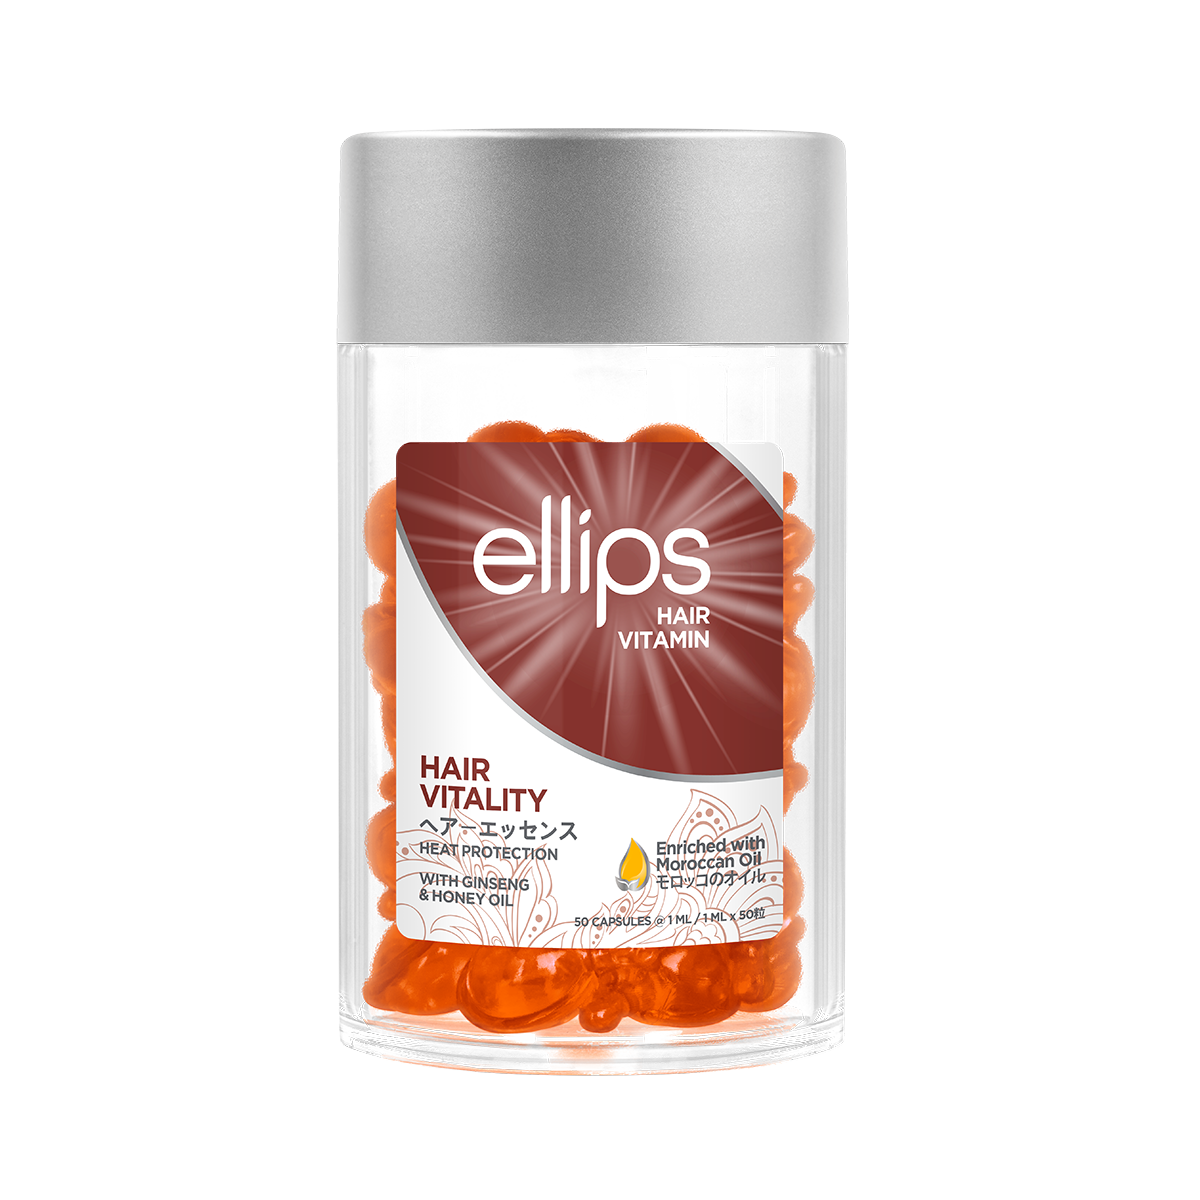 ellips Orange Hair Vitality - 50 capsule jar